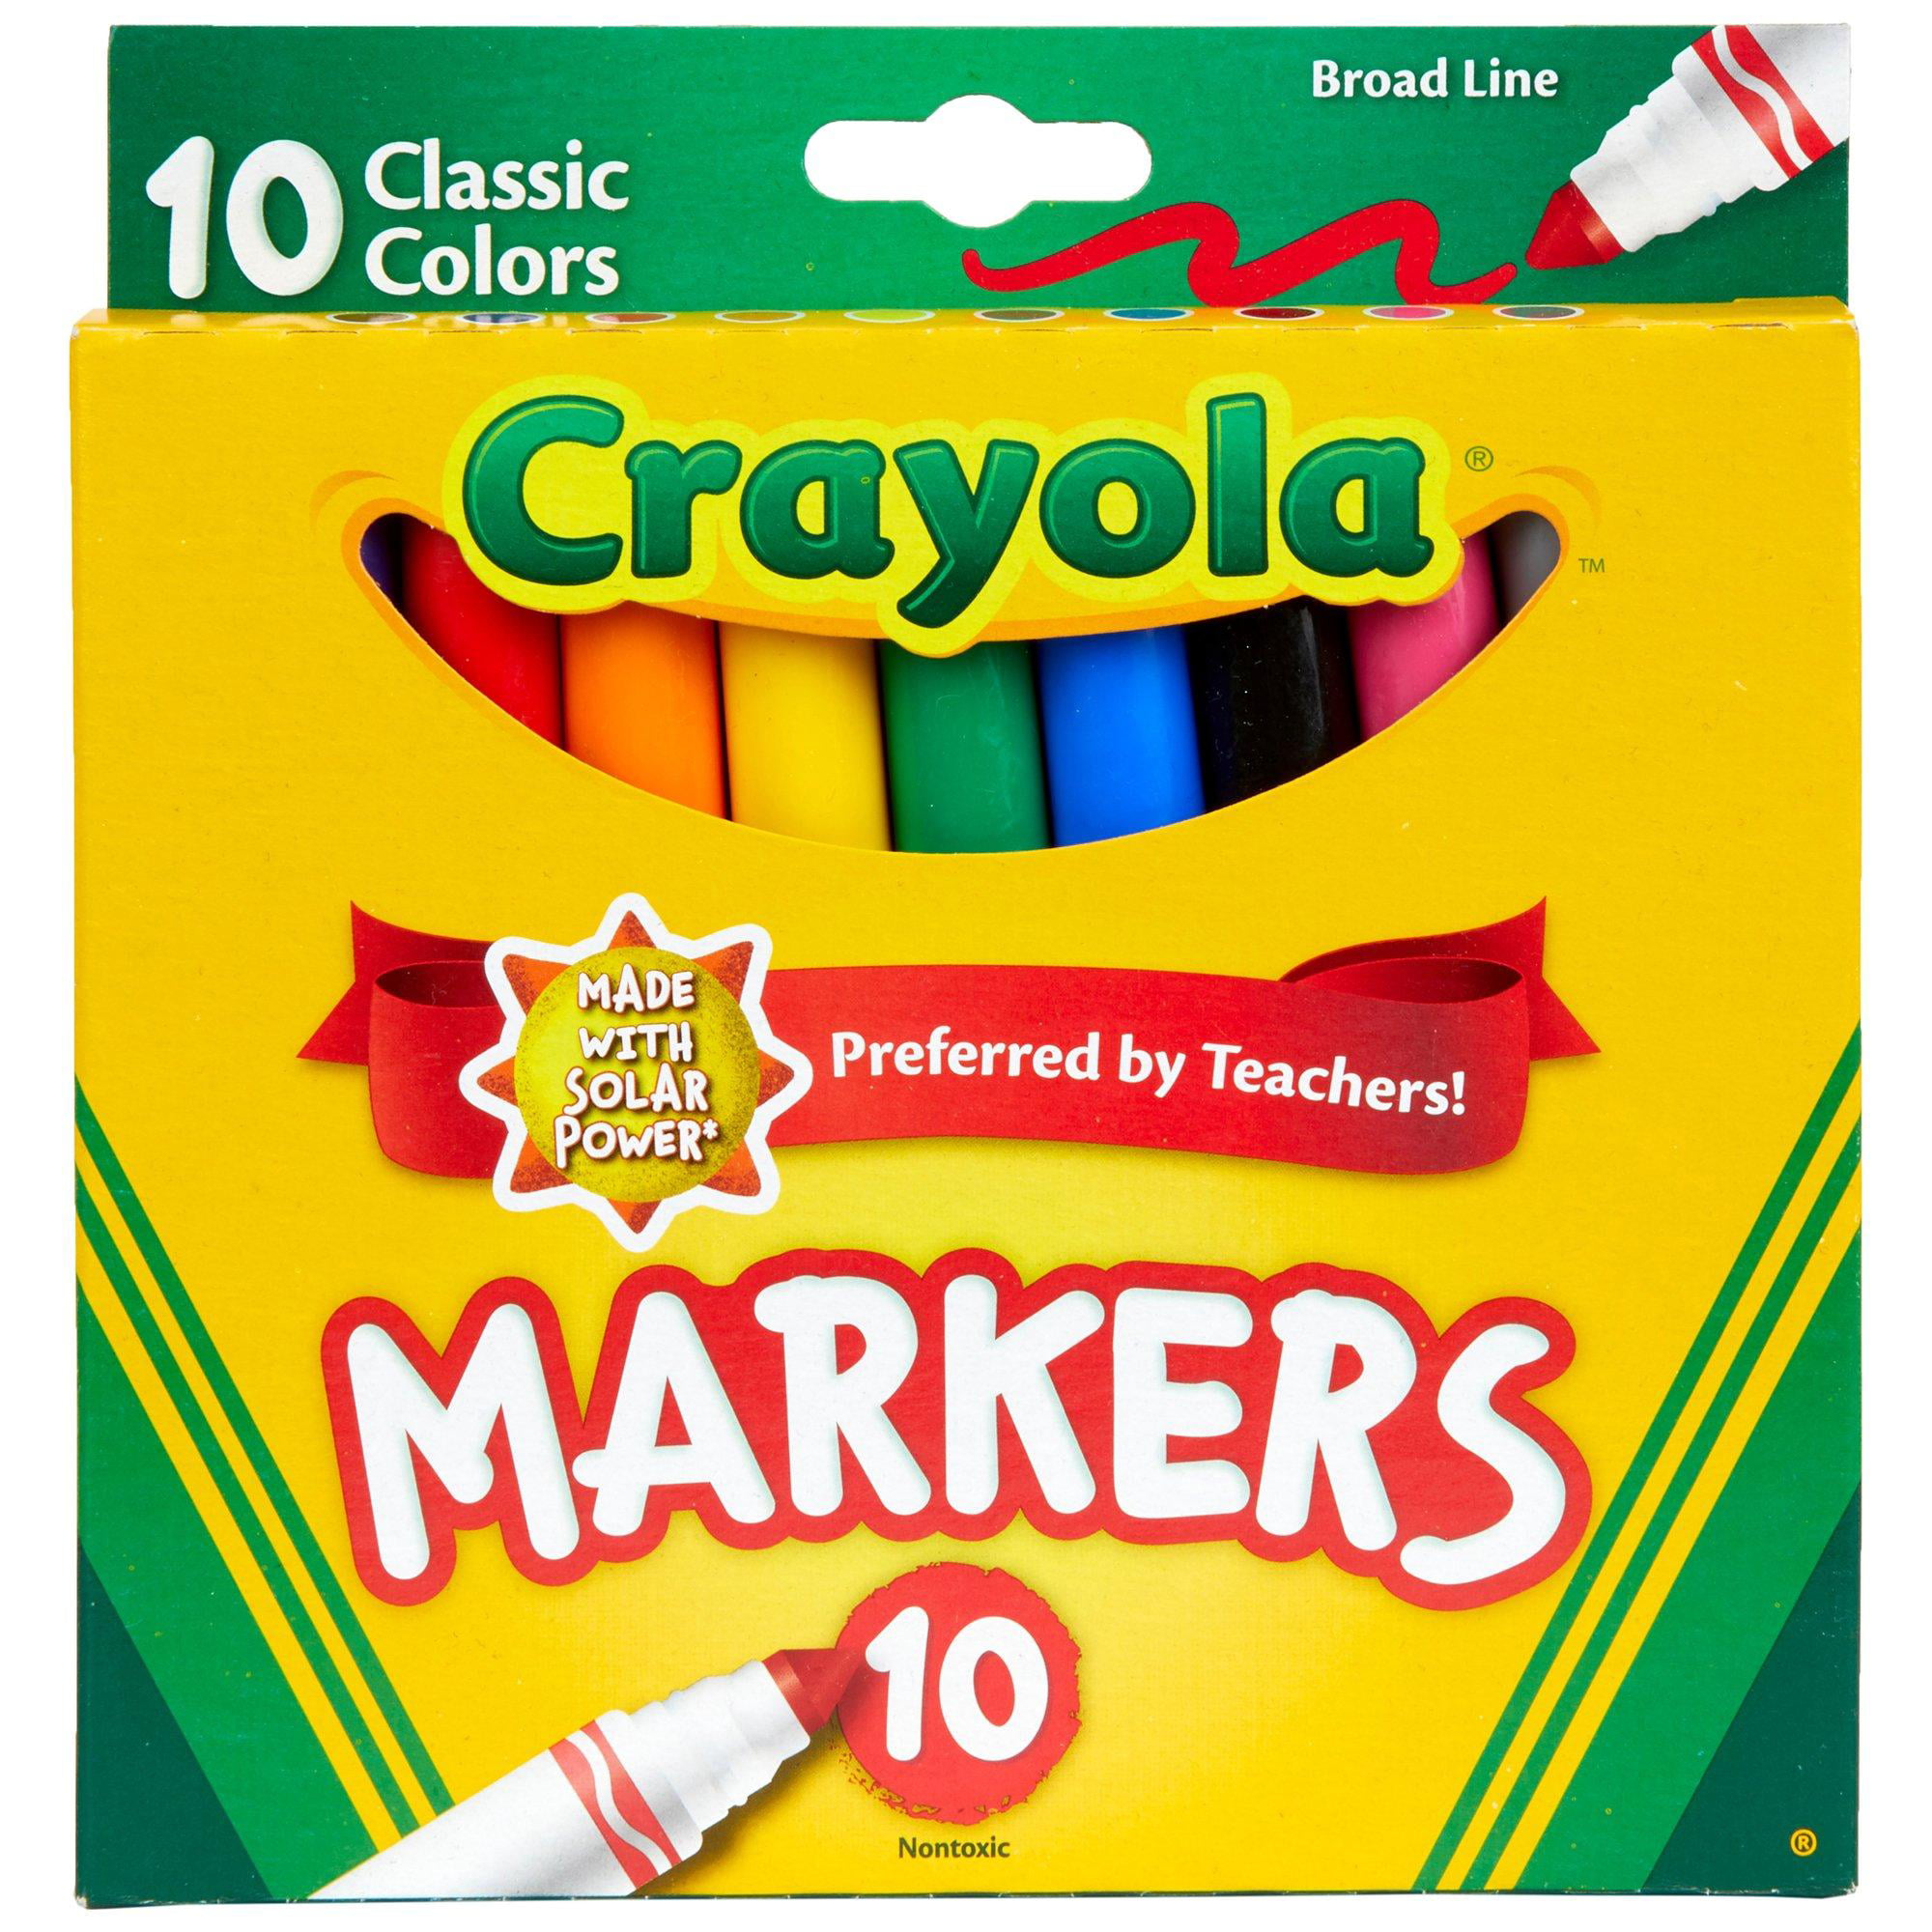 Crayola No.24 pack, Crayola Wiki